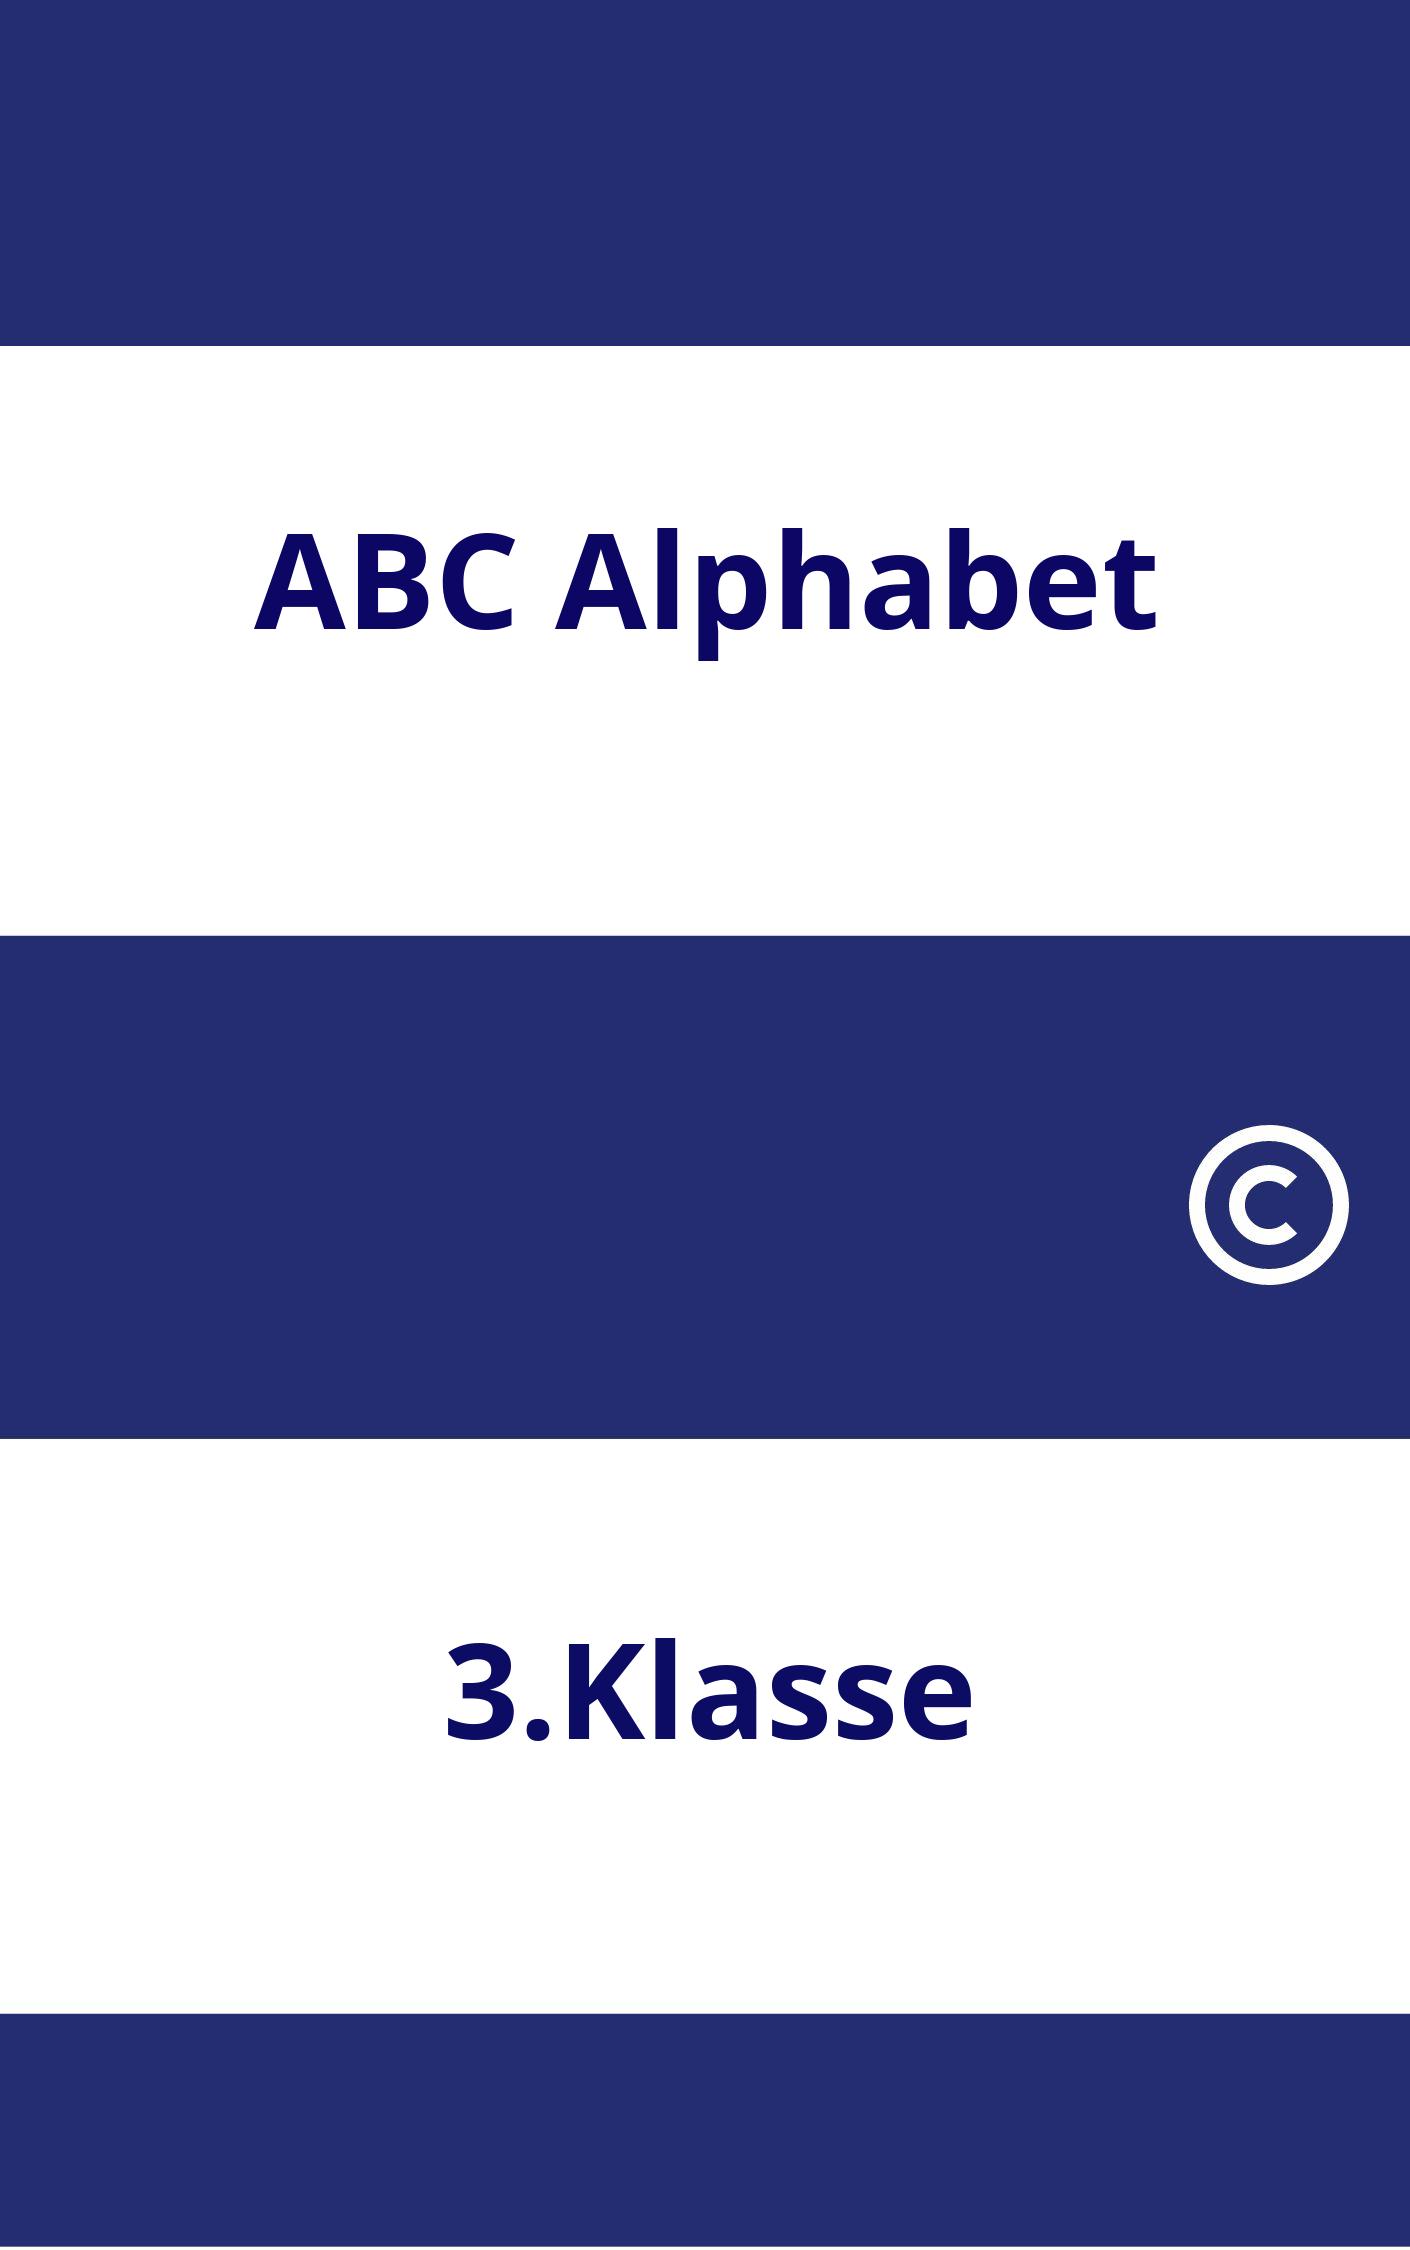 ABC Alphabet 3.Klasse Arbeitsblätter PDF